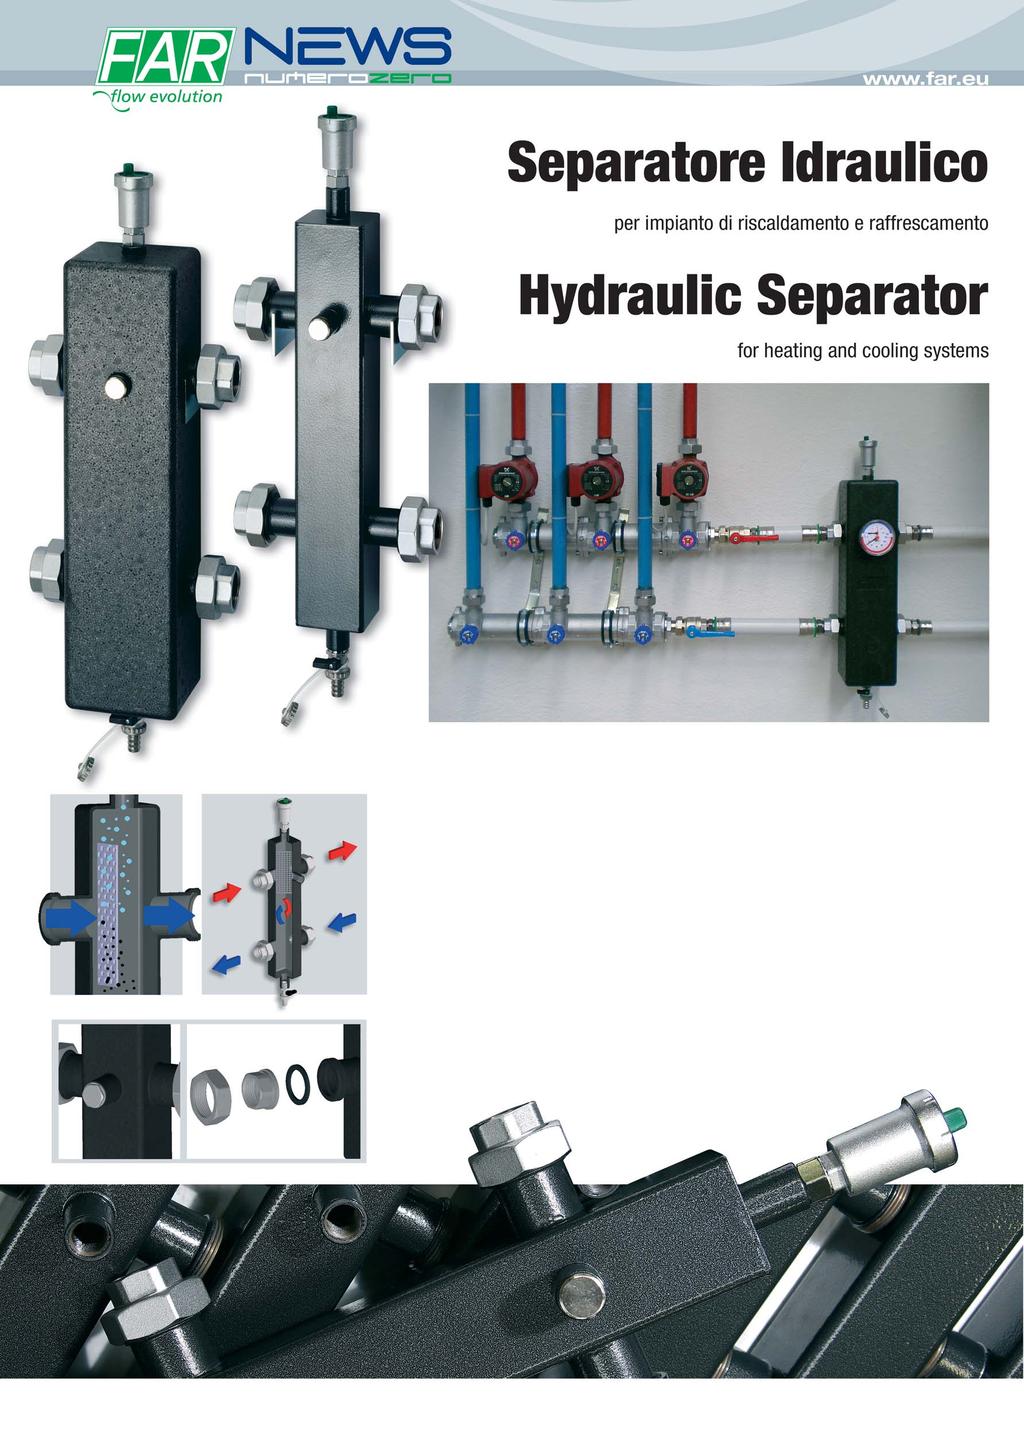 Il separatore idraulico FAR è composto da un corpo centrale con quattro attacchi laterali per il collegamento al circuito primario e secondario.